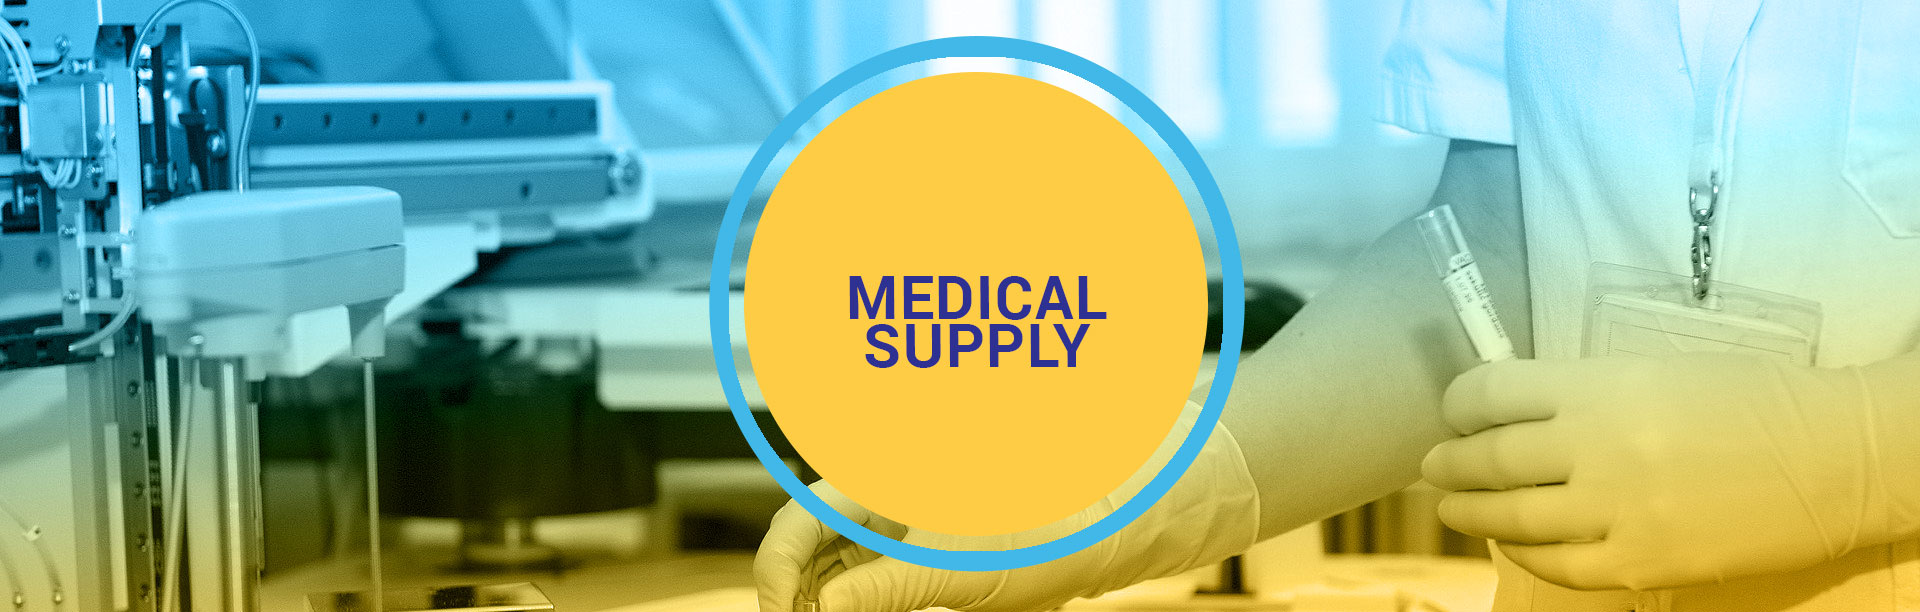 medical-supply-header